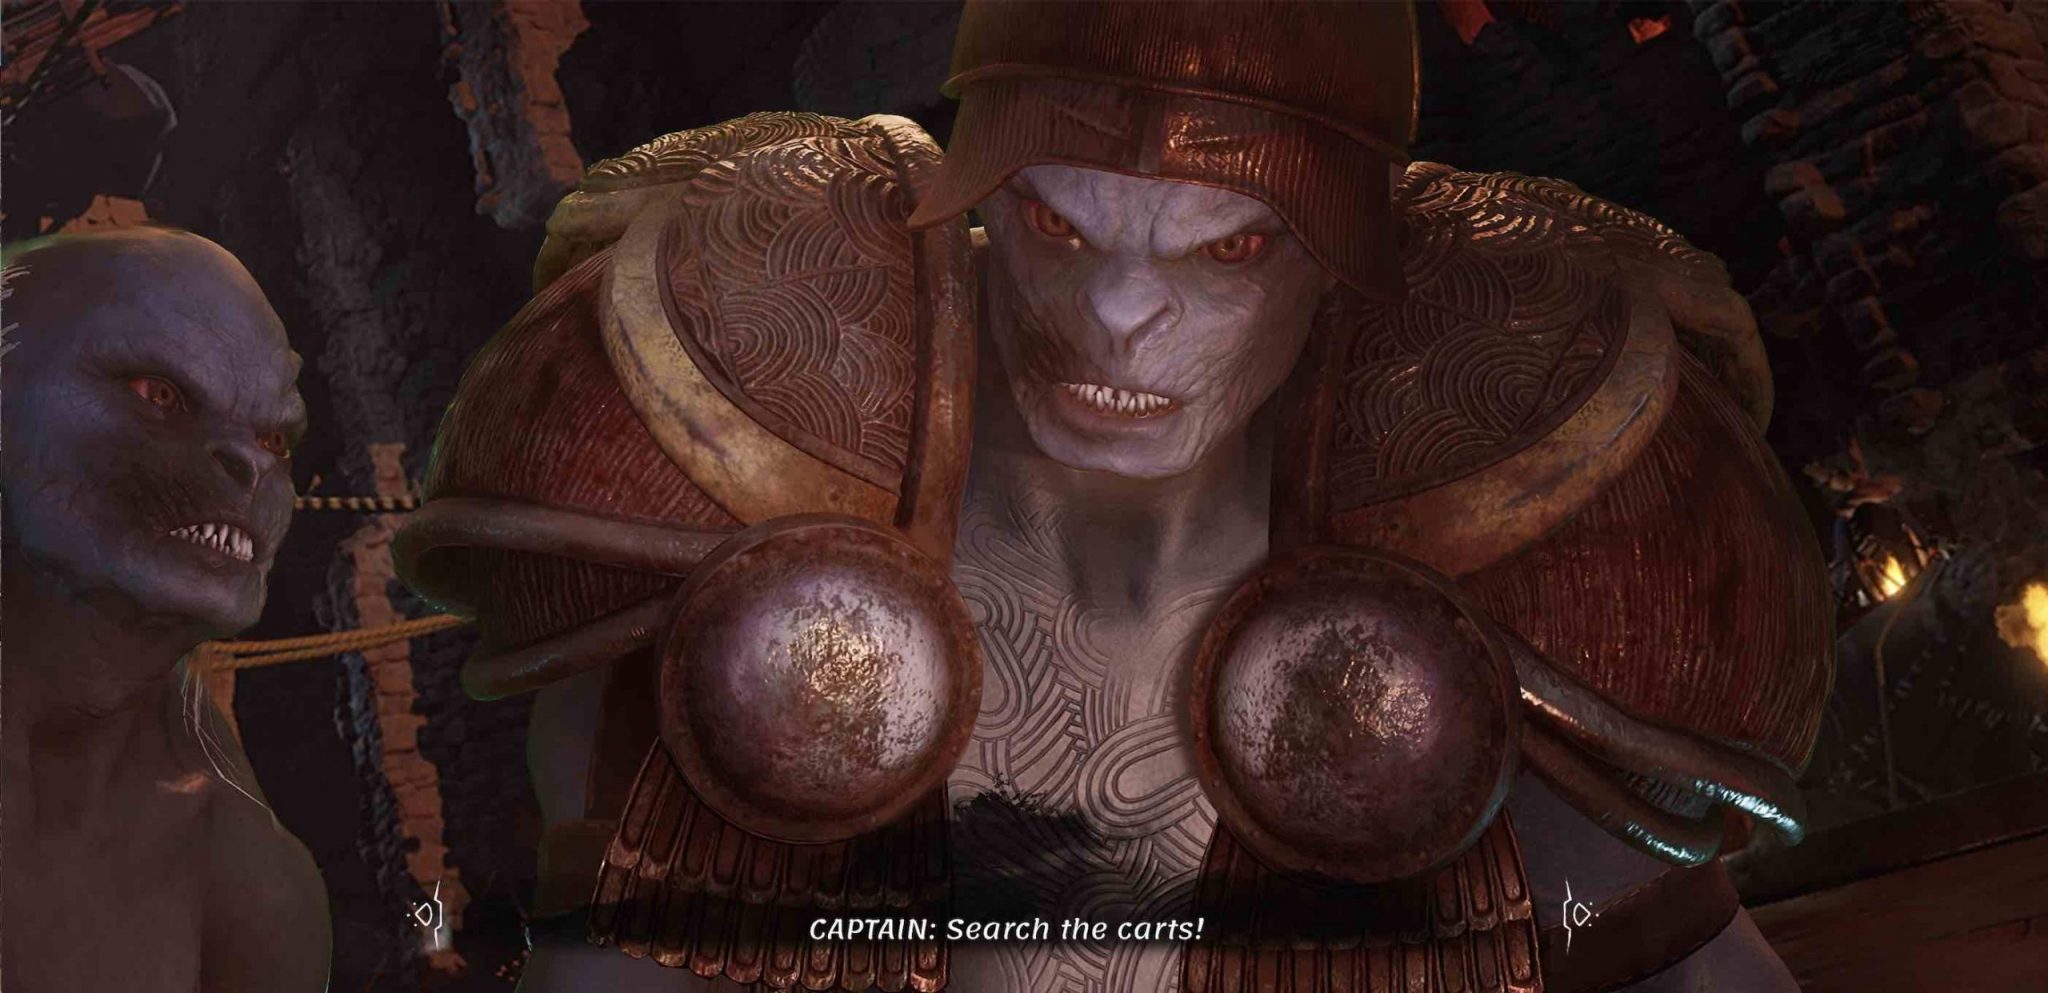 imagen de El Señor de Los Anillos Gollum videojuego PS5 Xbox Series X PC